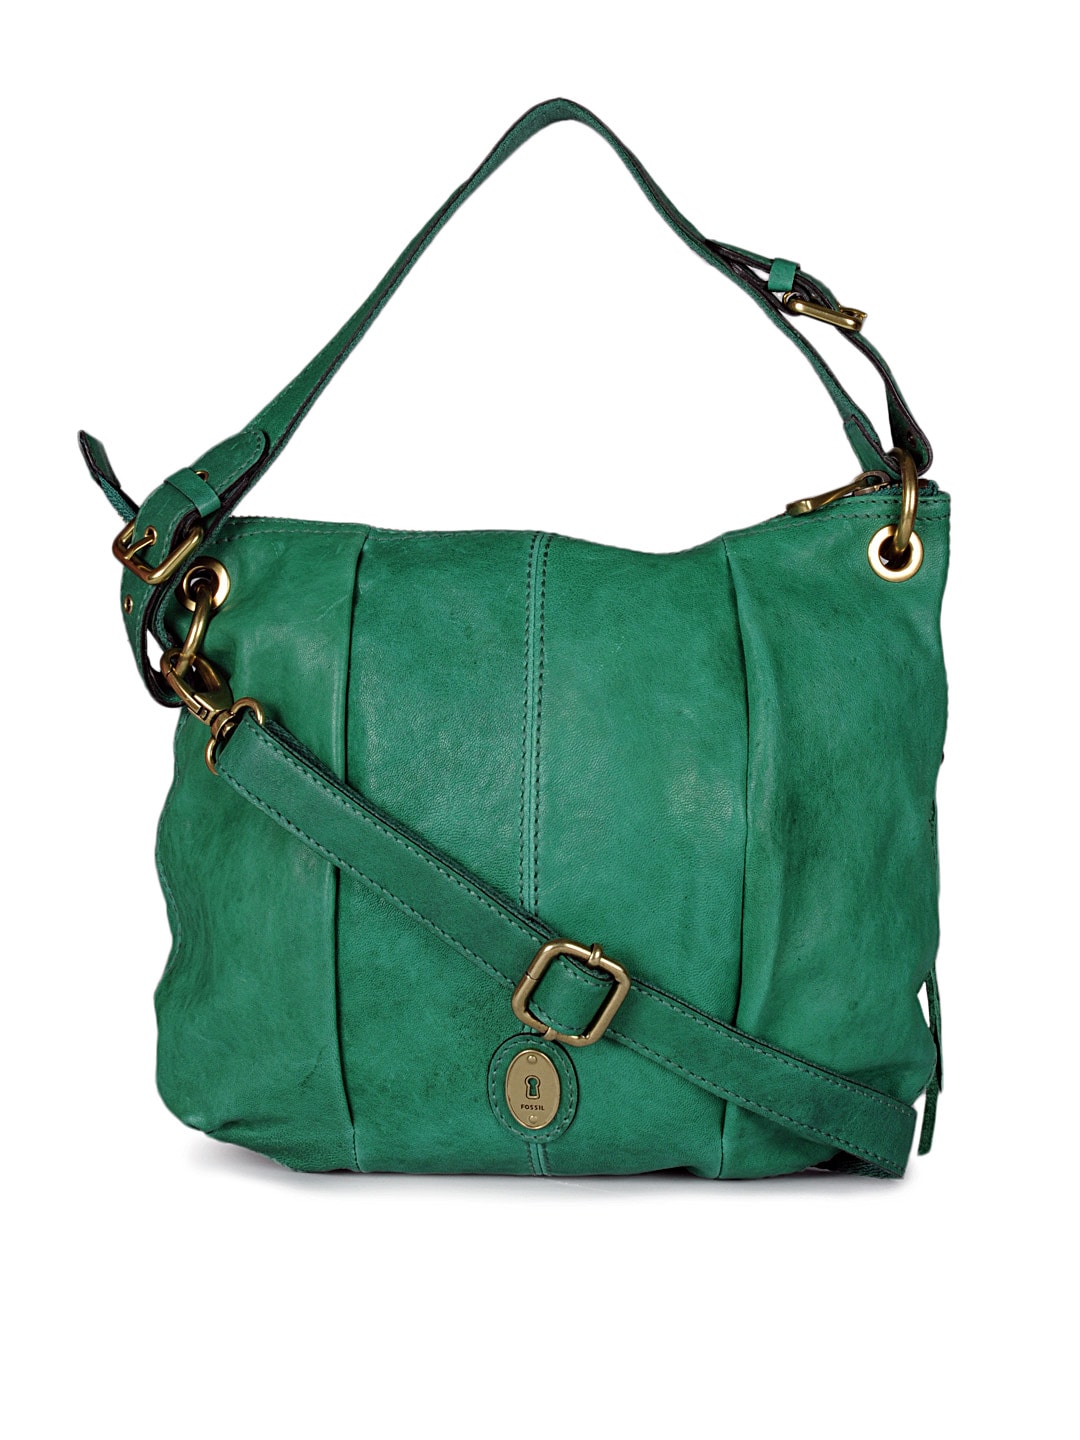 Fossil Women Green Handbag